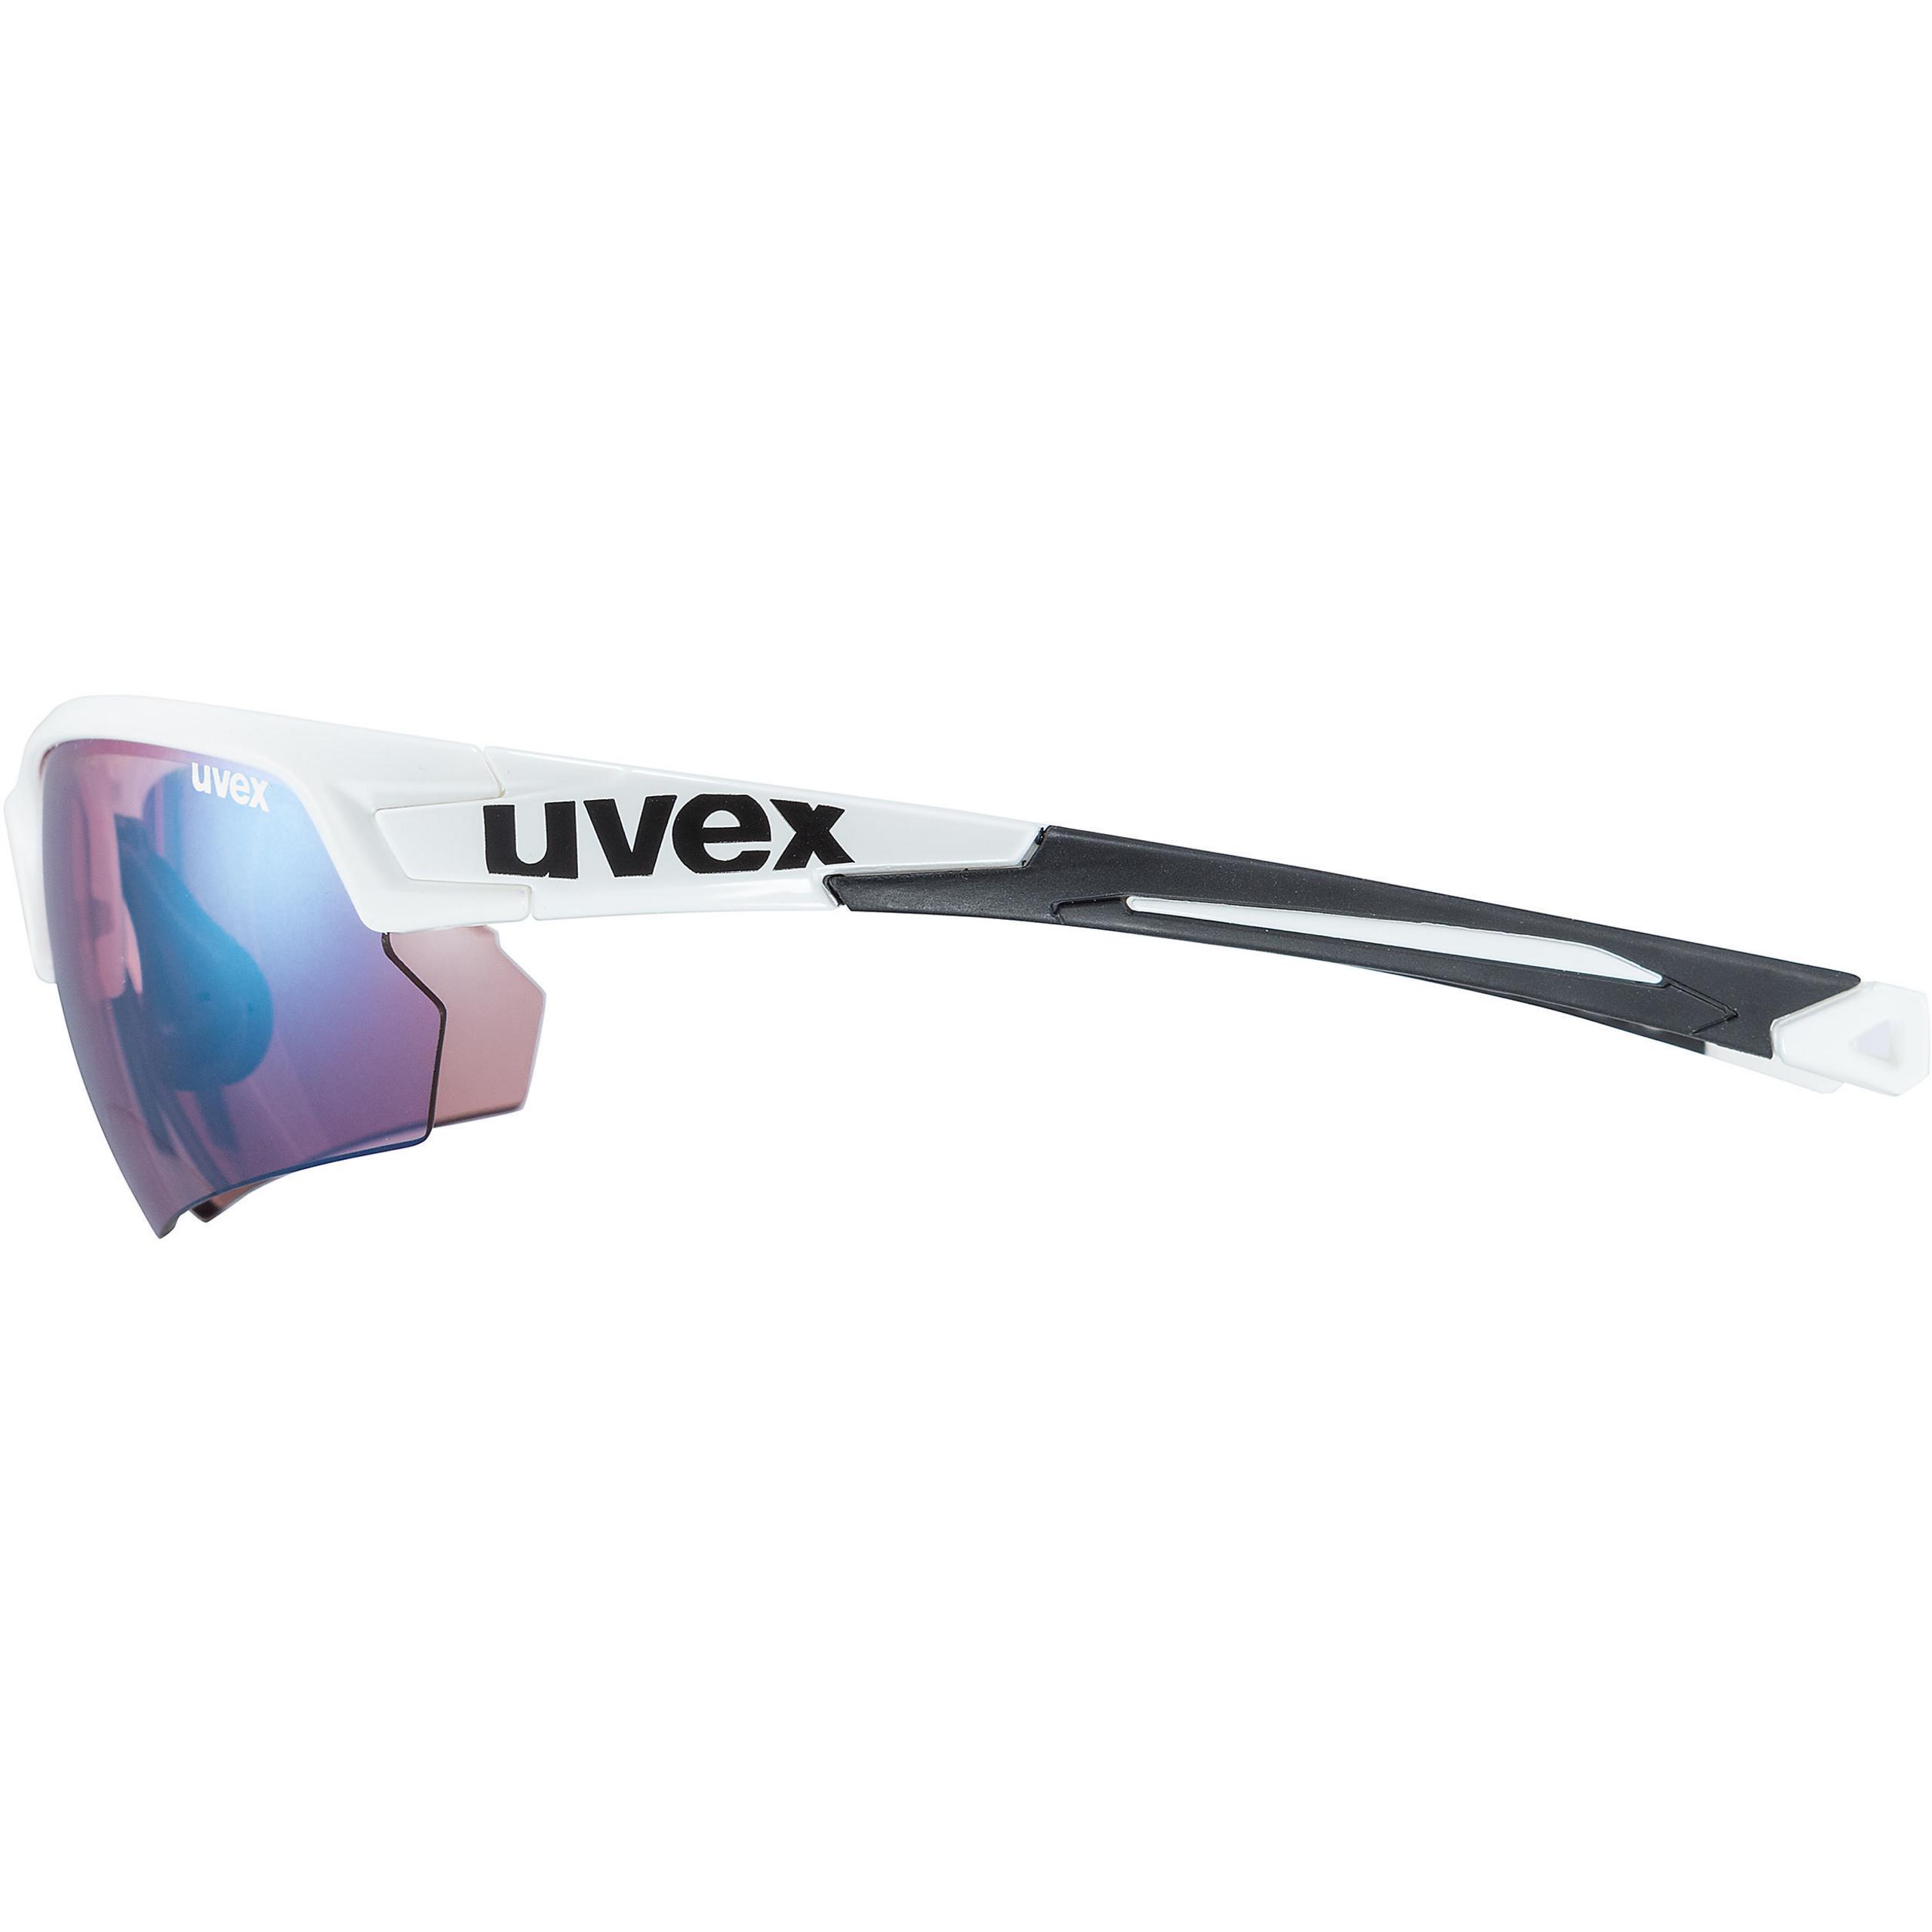 Somatische cel Kameraad Voorman uvex sportstyle 224 CV white/ outdoor | Eyewear | uvex sports